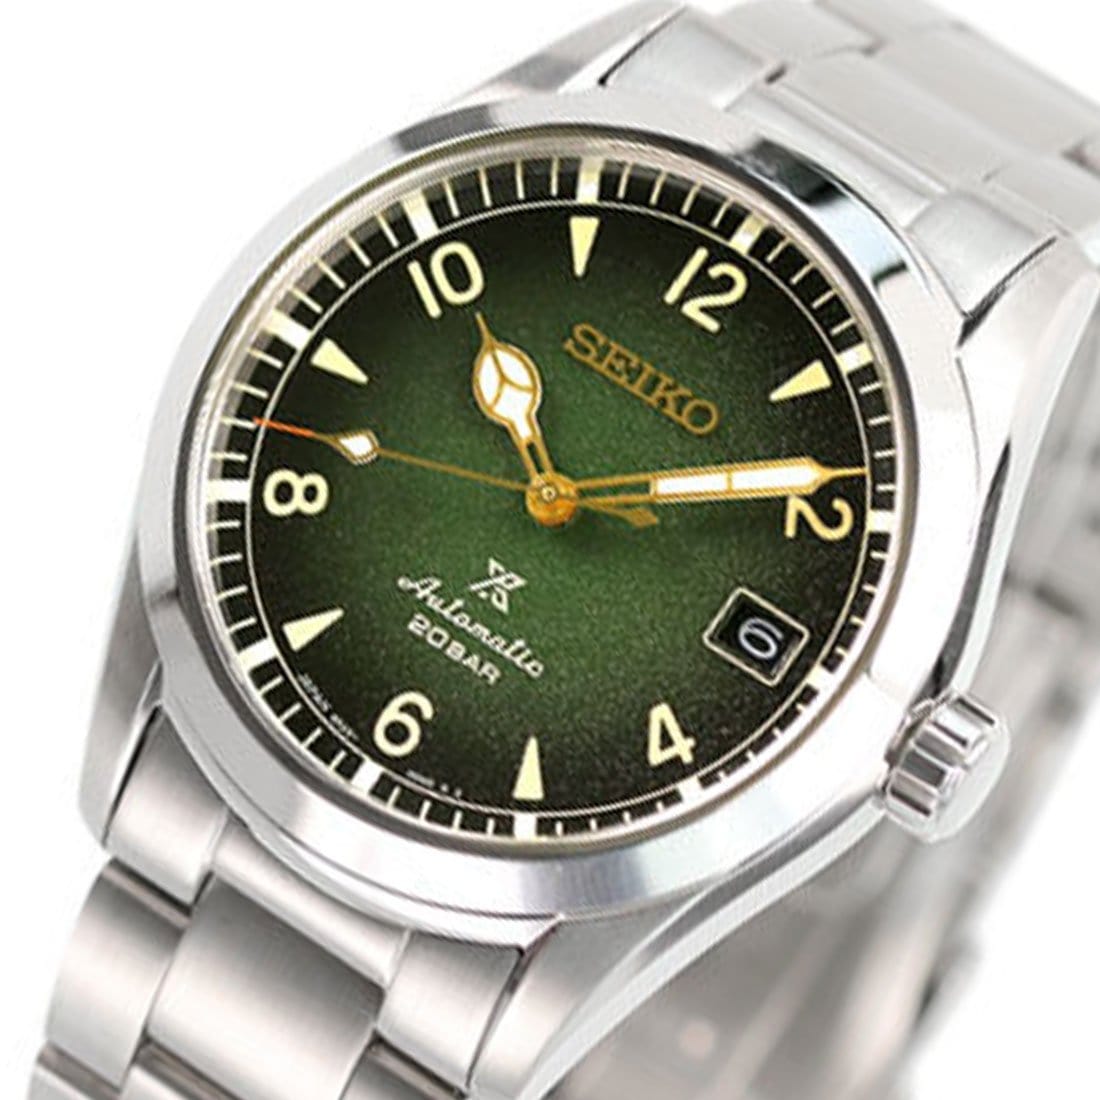 Seiko SBDC115 Prospex Alpinist Automatic 24 Jewels Green Dial JDM Watch